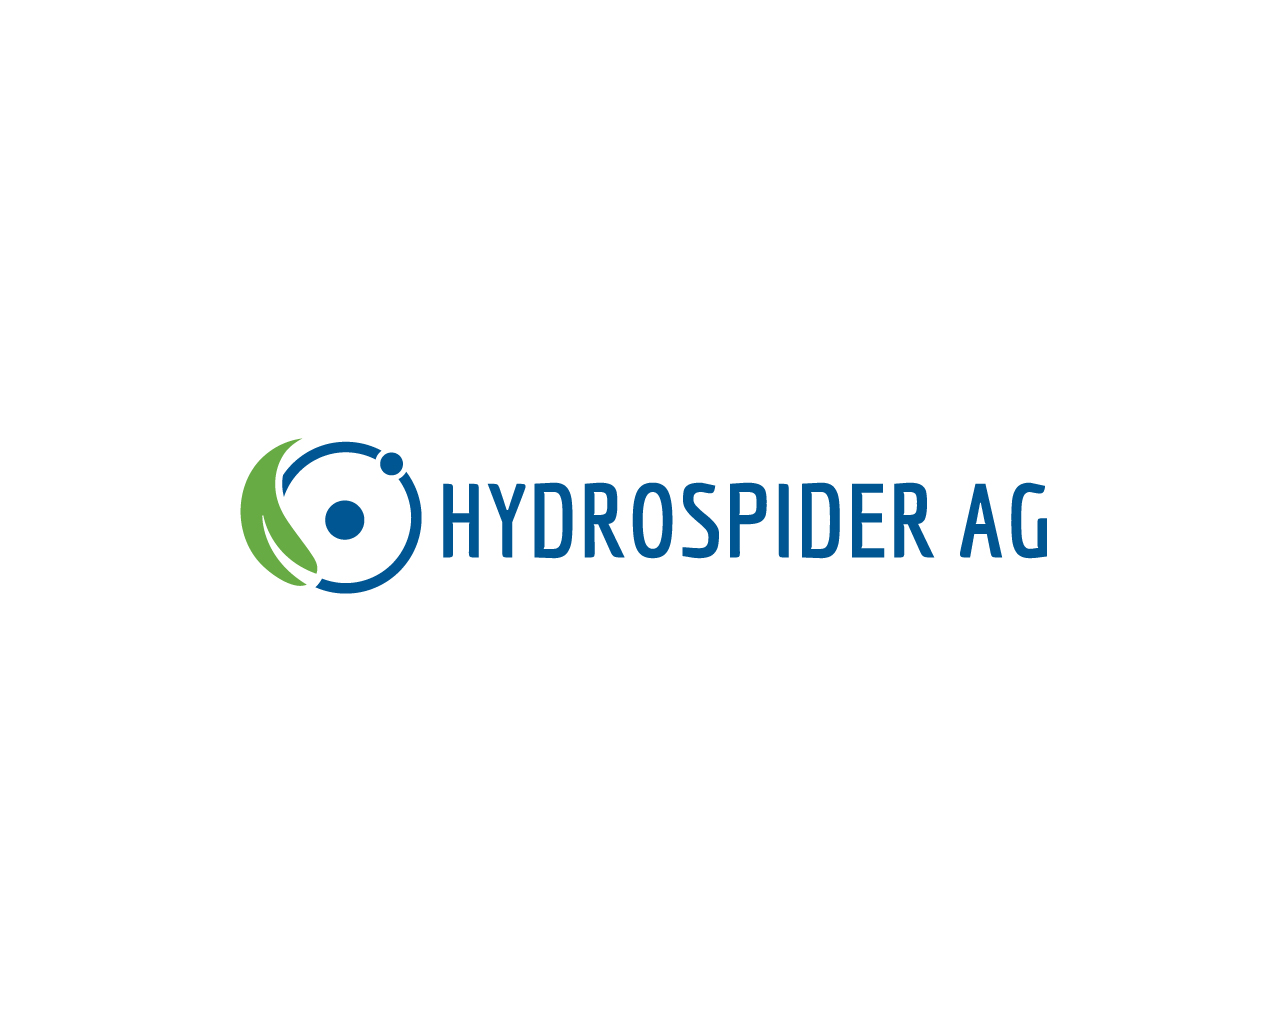 HYDROSPIDER AG